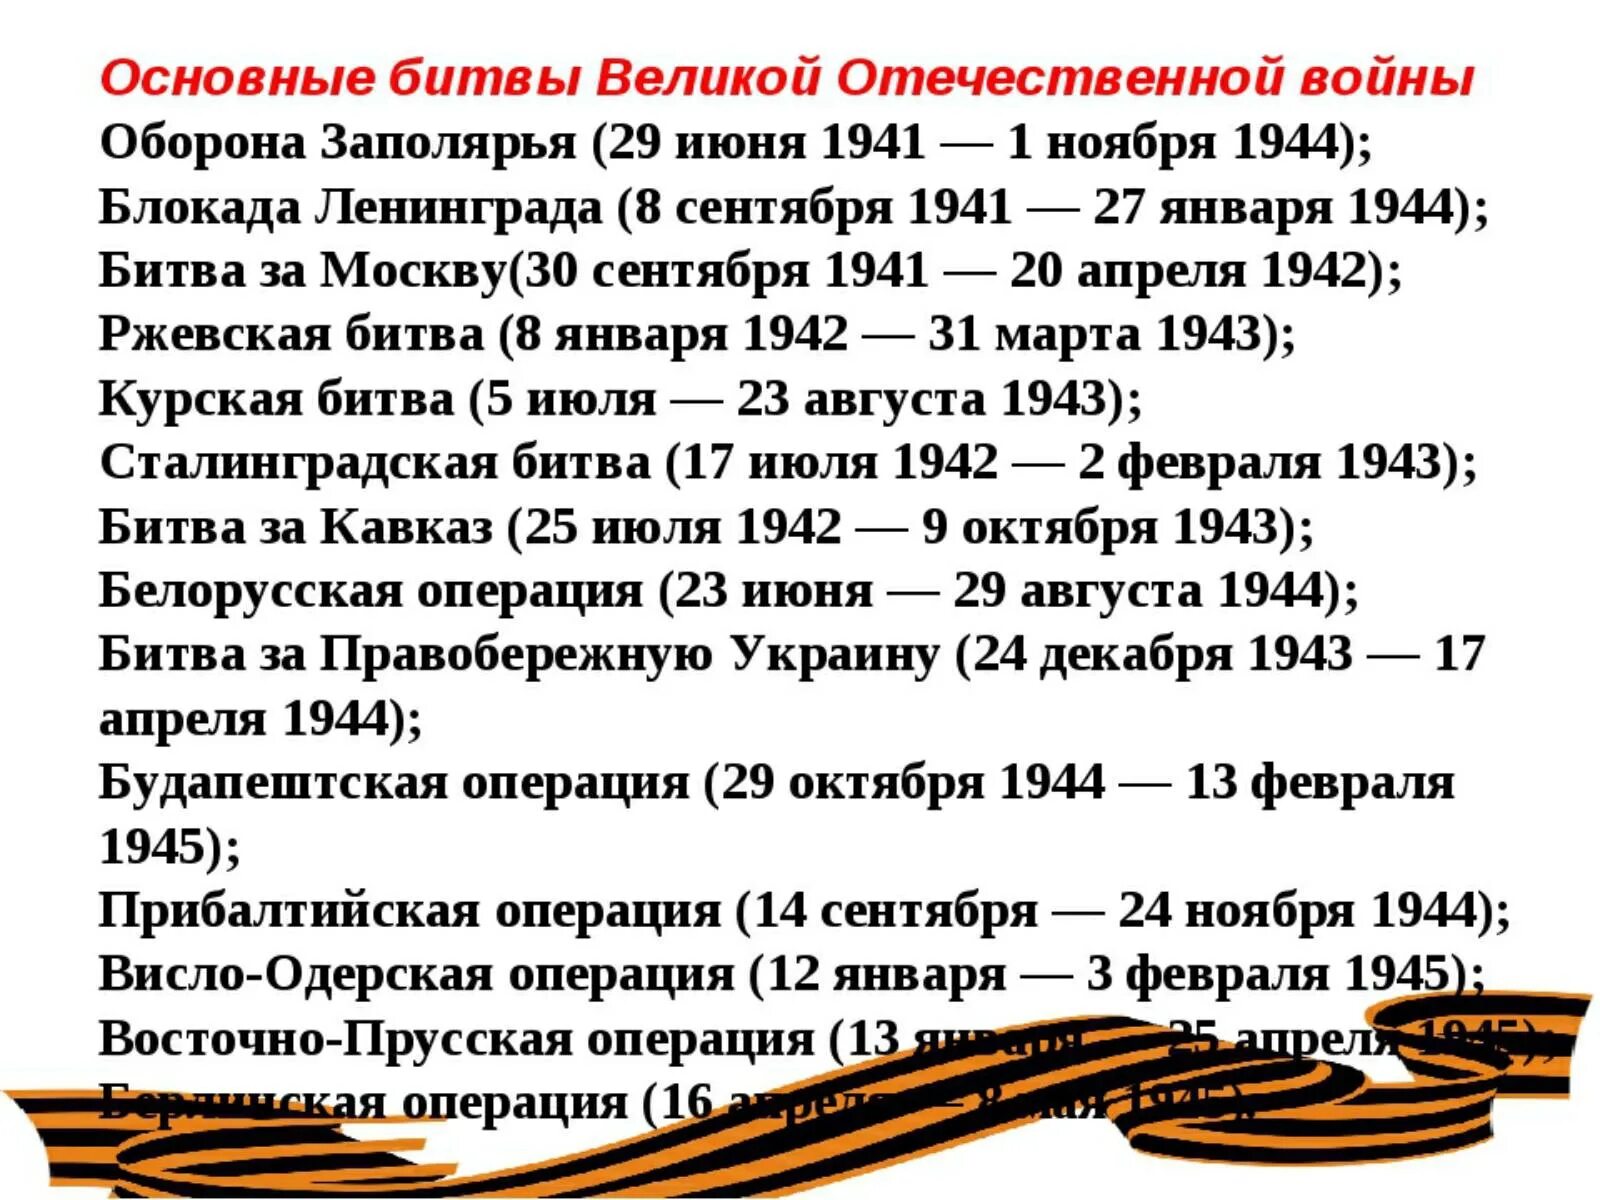 Важнейшие битвы ВОВ даты. Даты крупных сражений Великой Отечественной войны. Даты Великой Отечественной войны основные 1945.